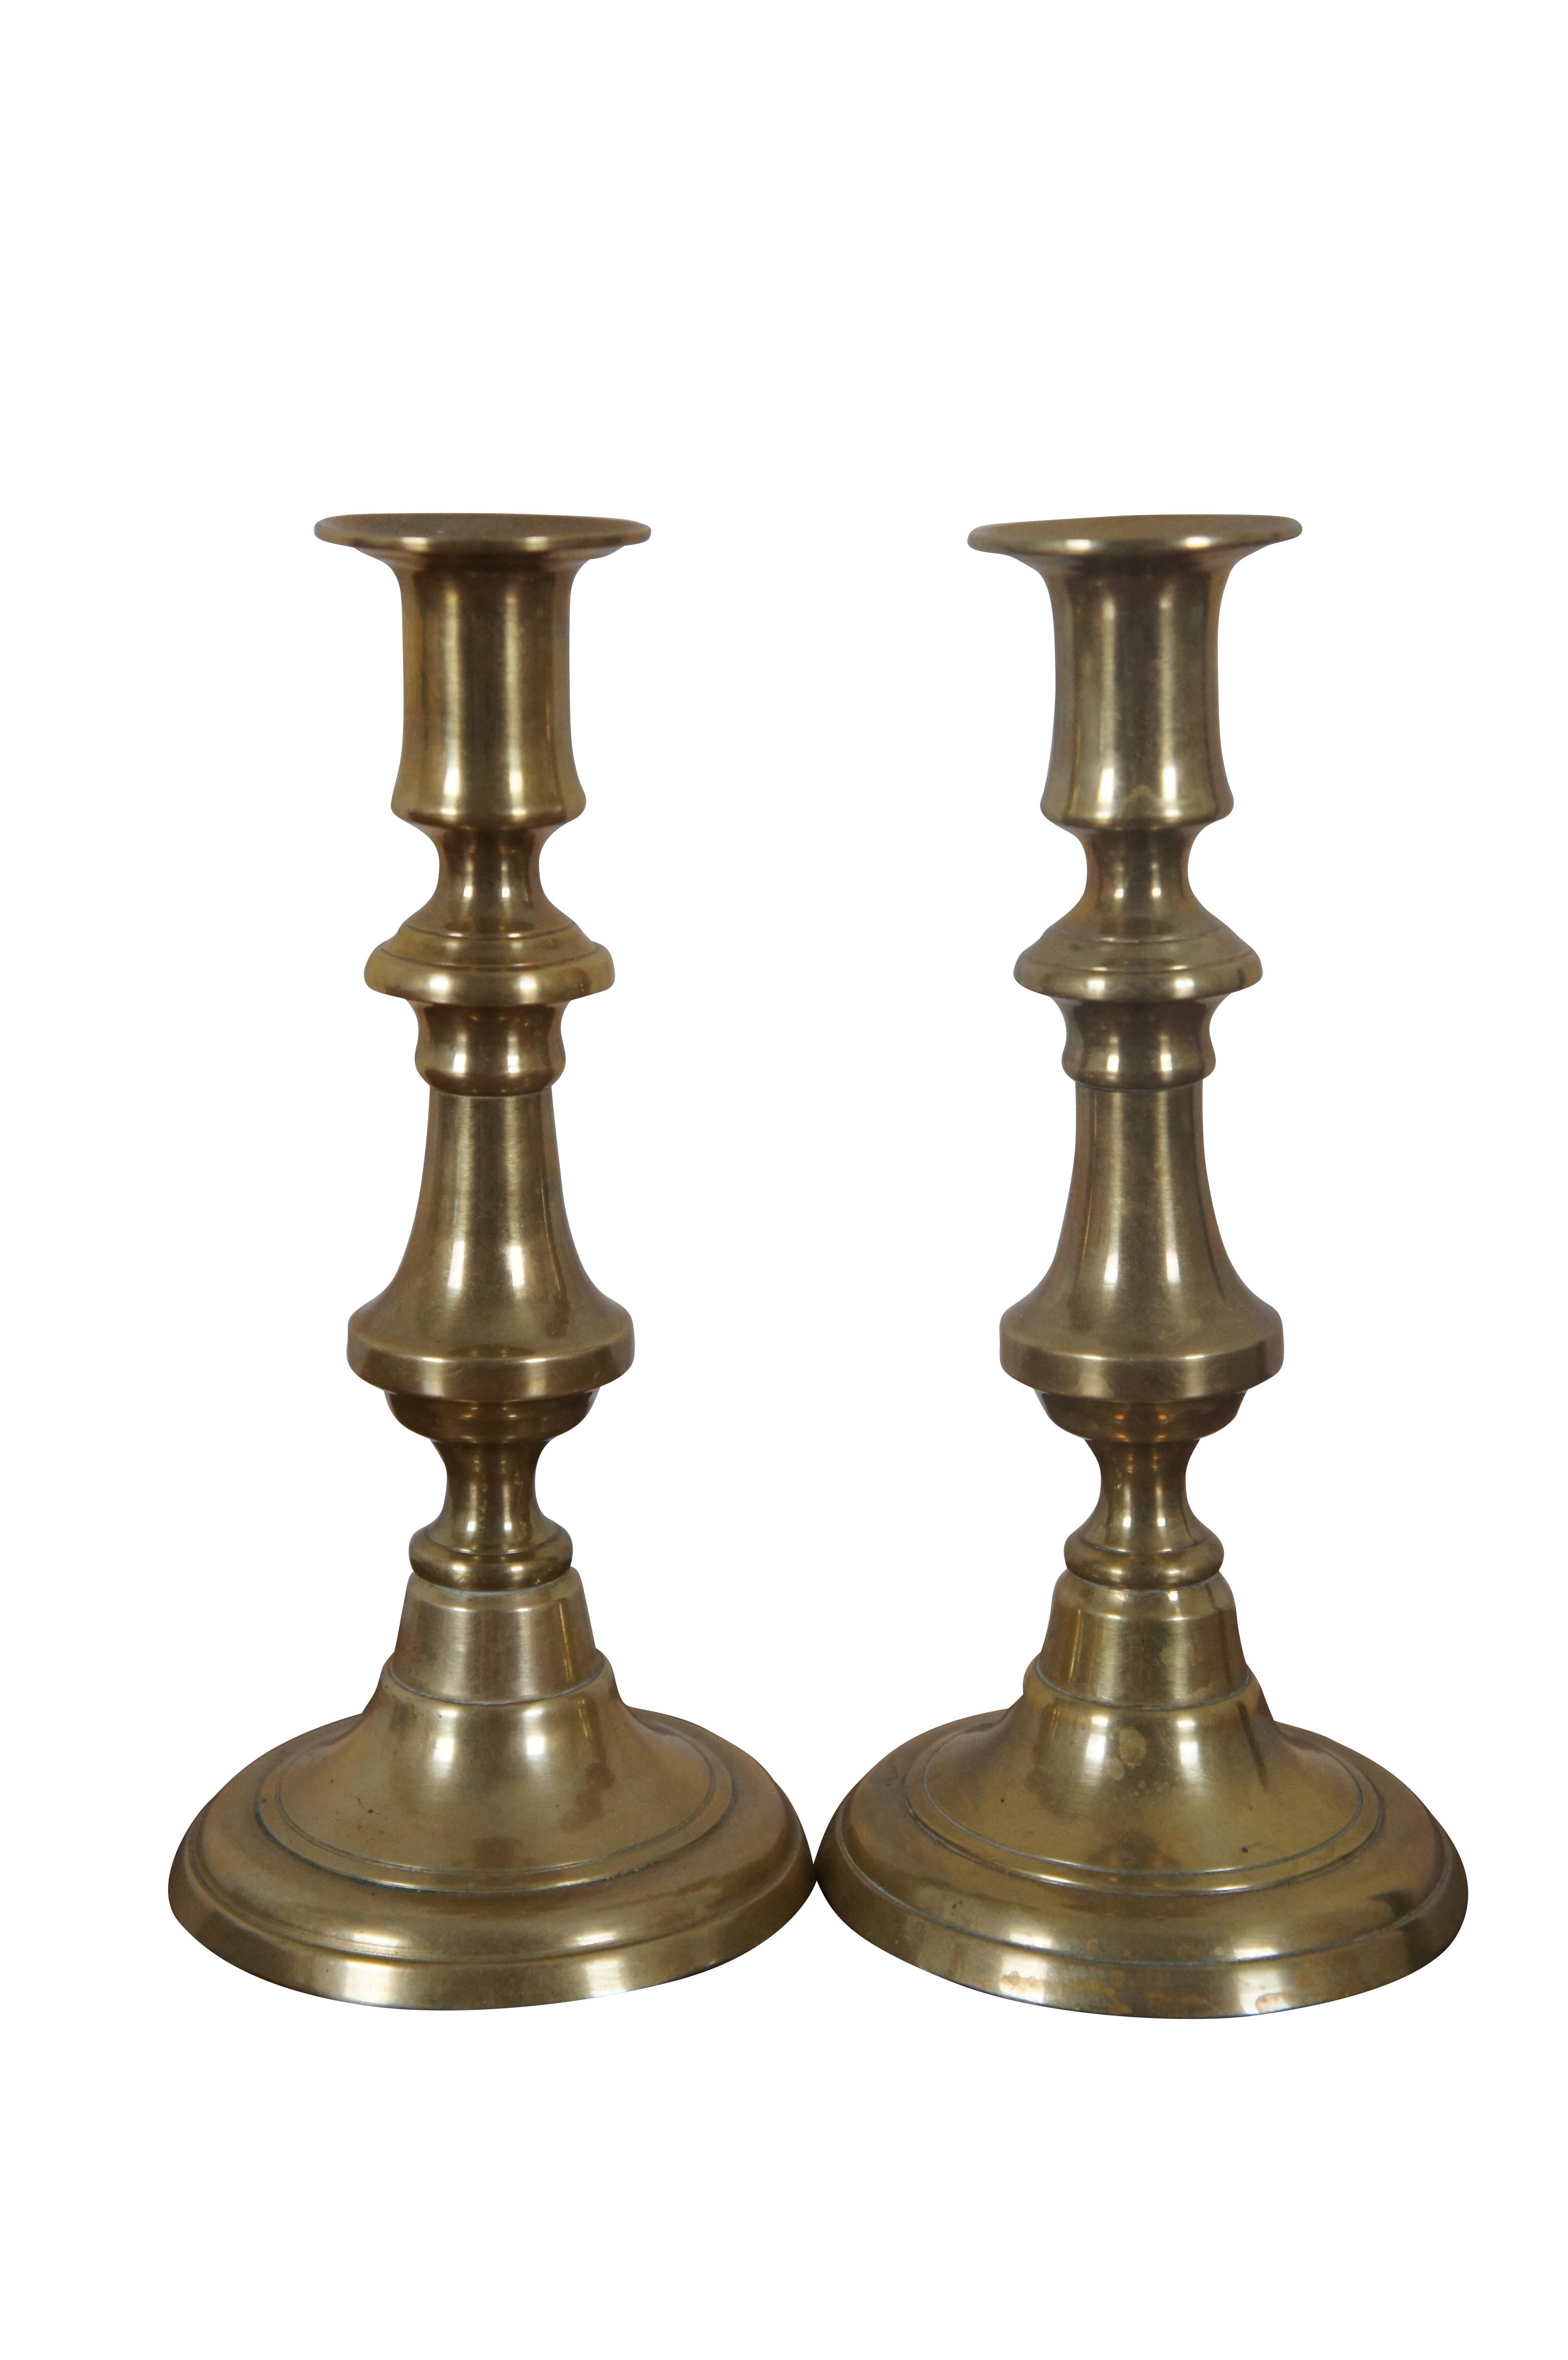 Trois chandeliers anglais anciens en laiton, de style Queen Anne, avec des tiges à pousser.

Dimensions :
Grand - 3.75